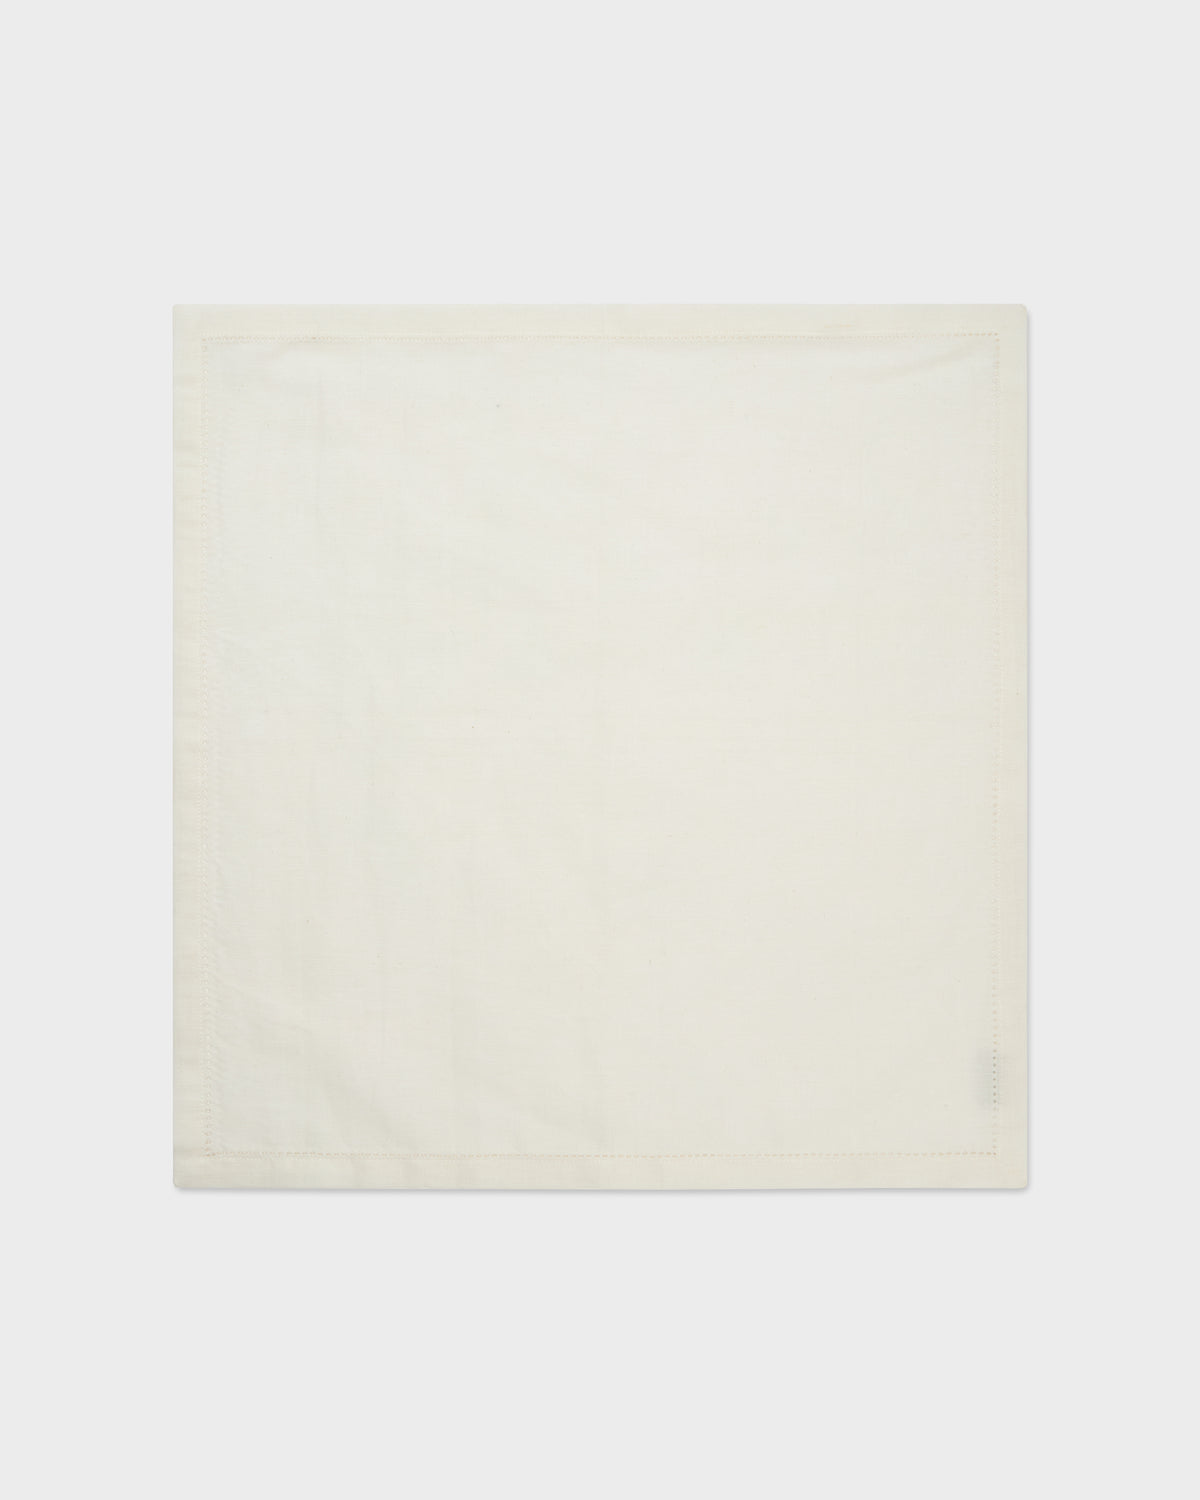 Linen Napkin - Off White 50x50 cm